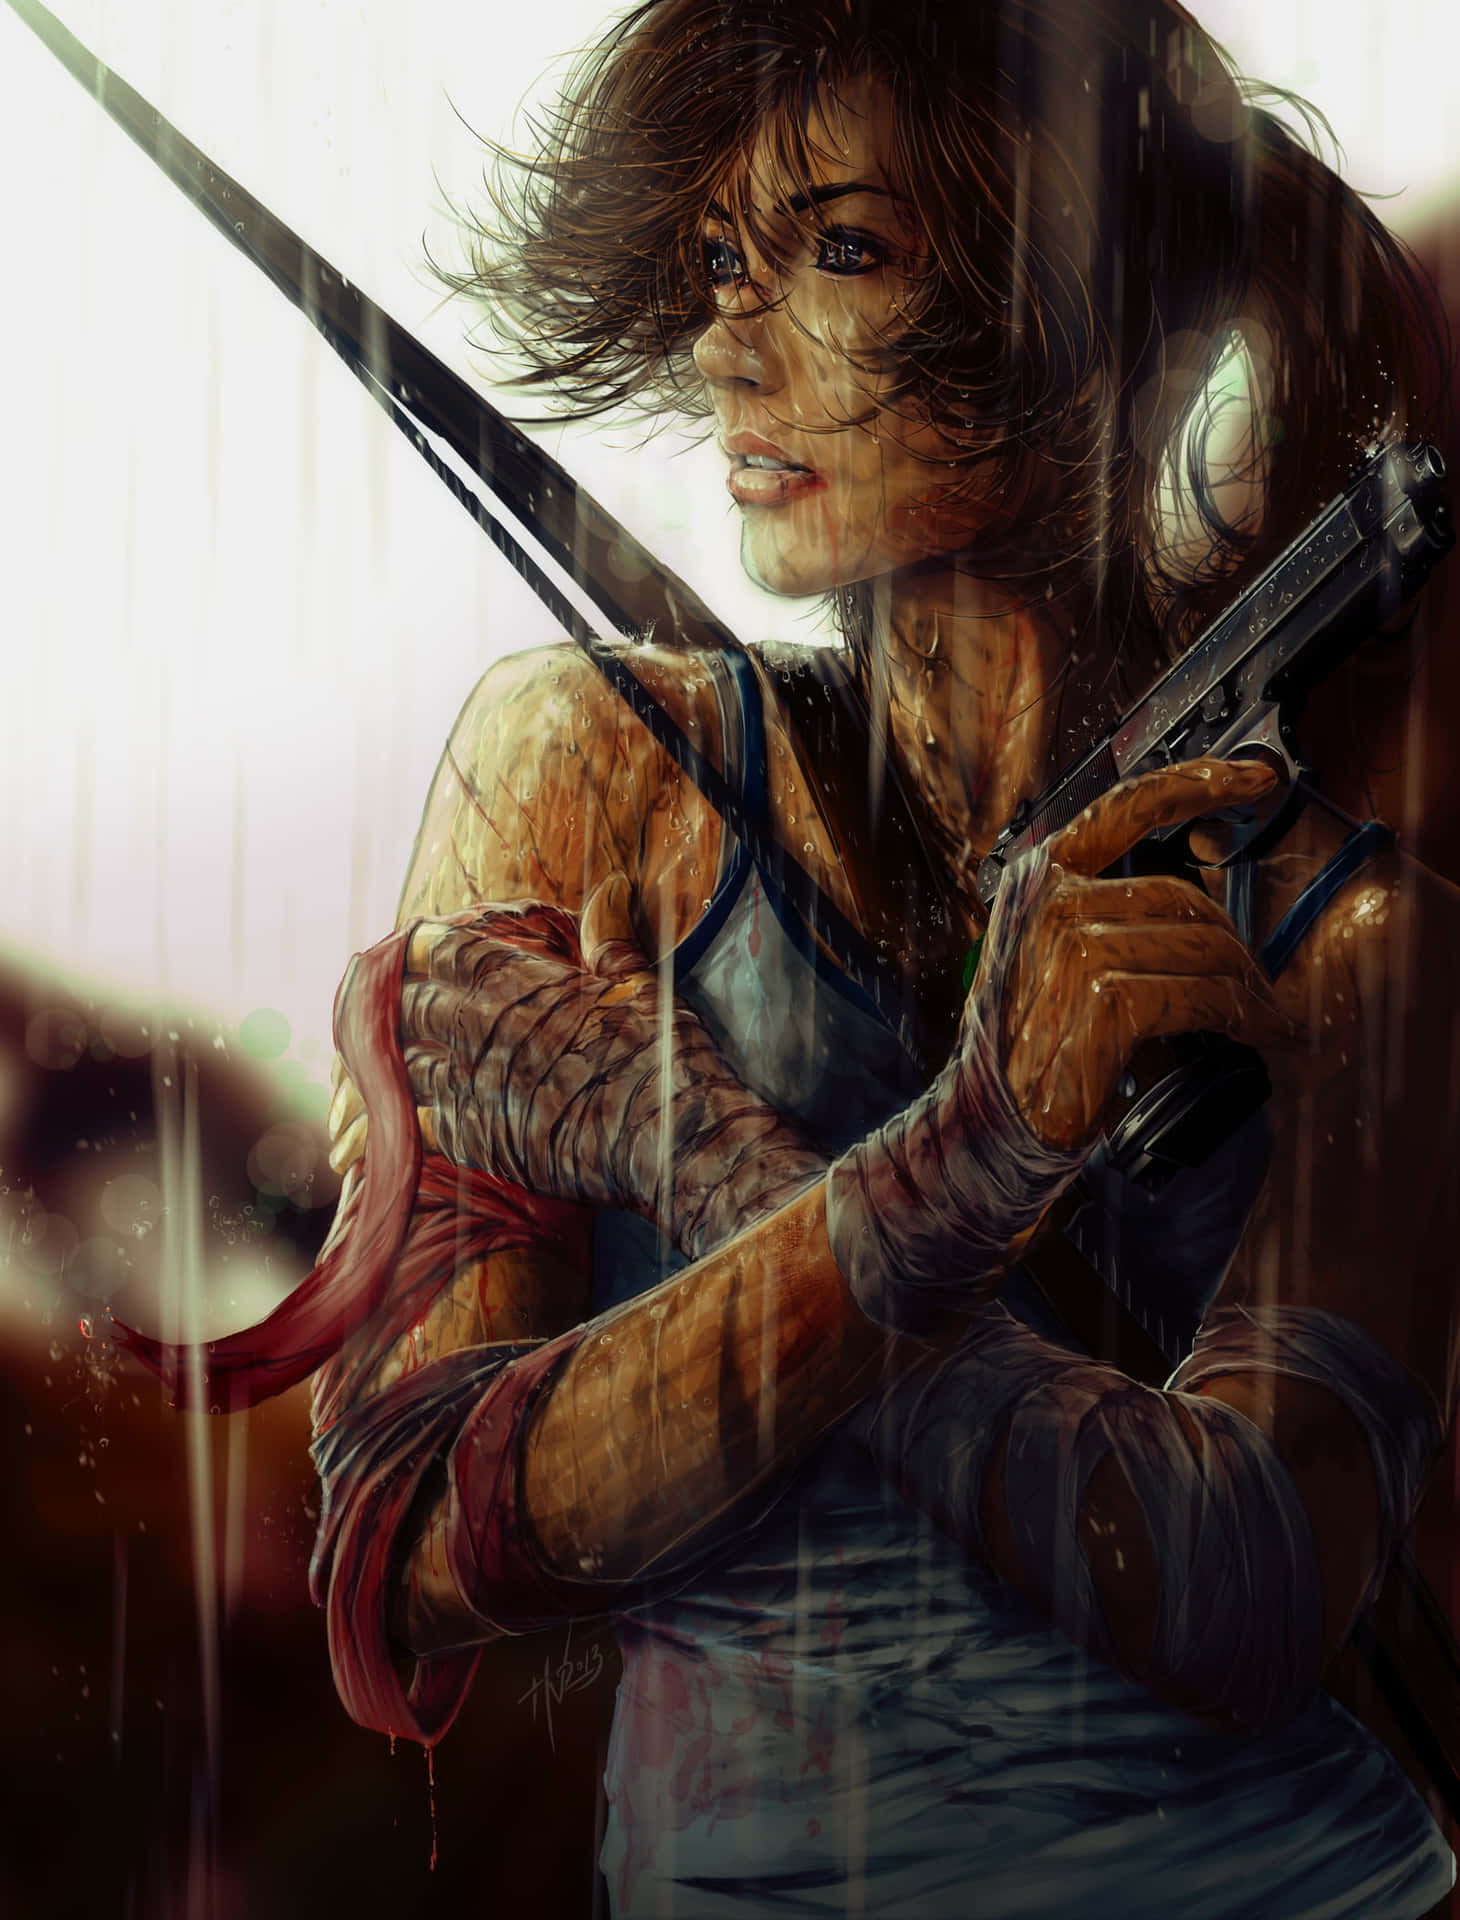 Androidhintergrund-flecken Von Rise Of The Tomb Raider